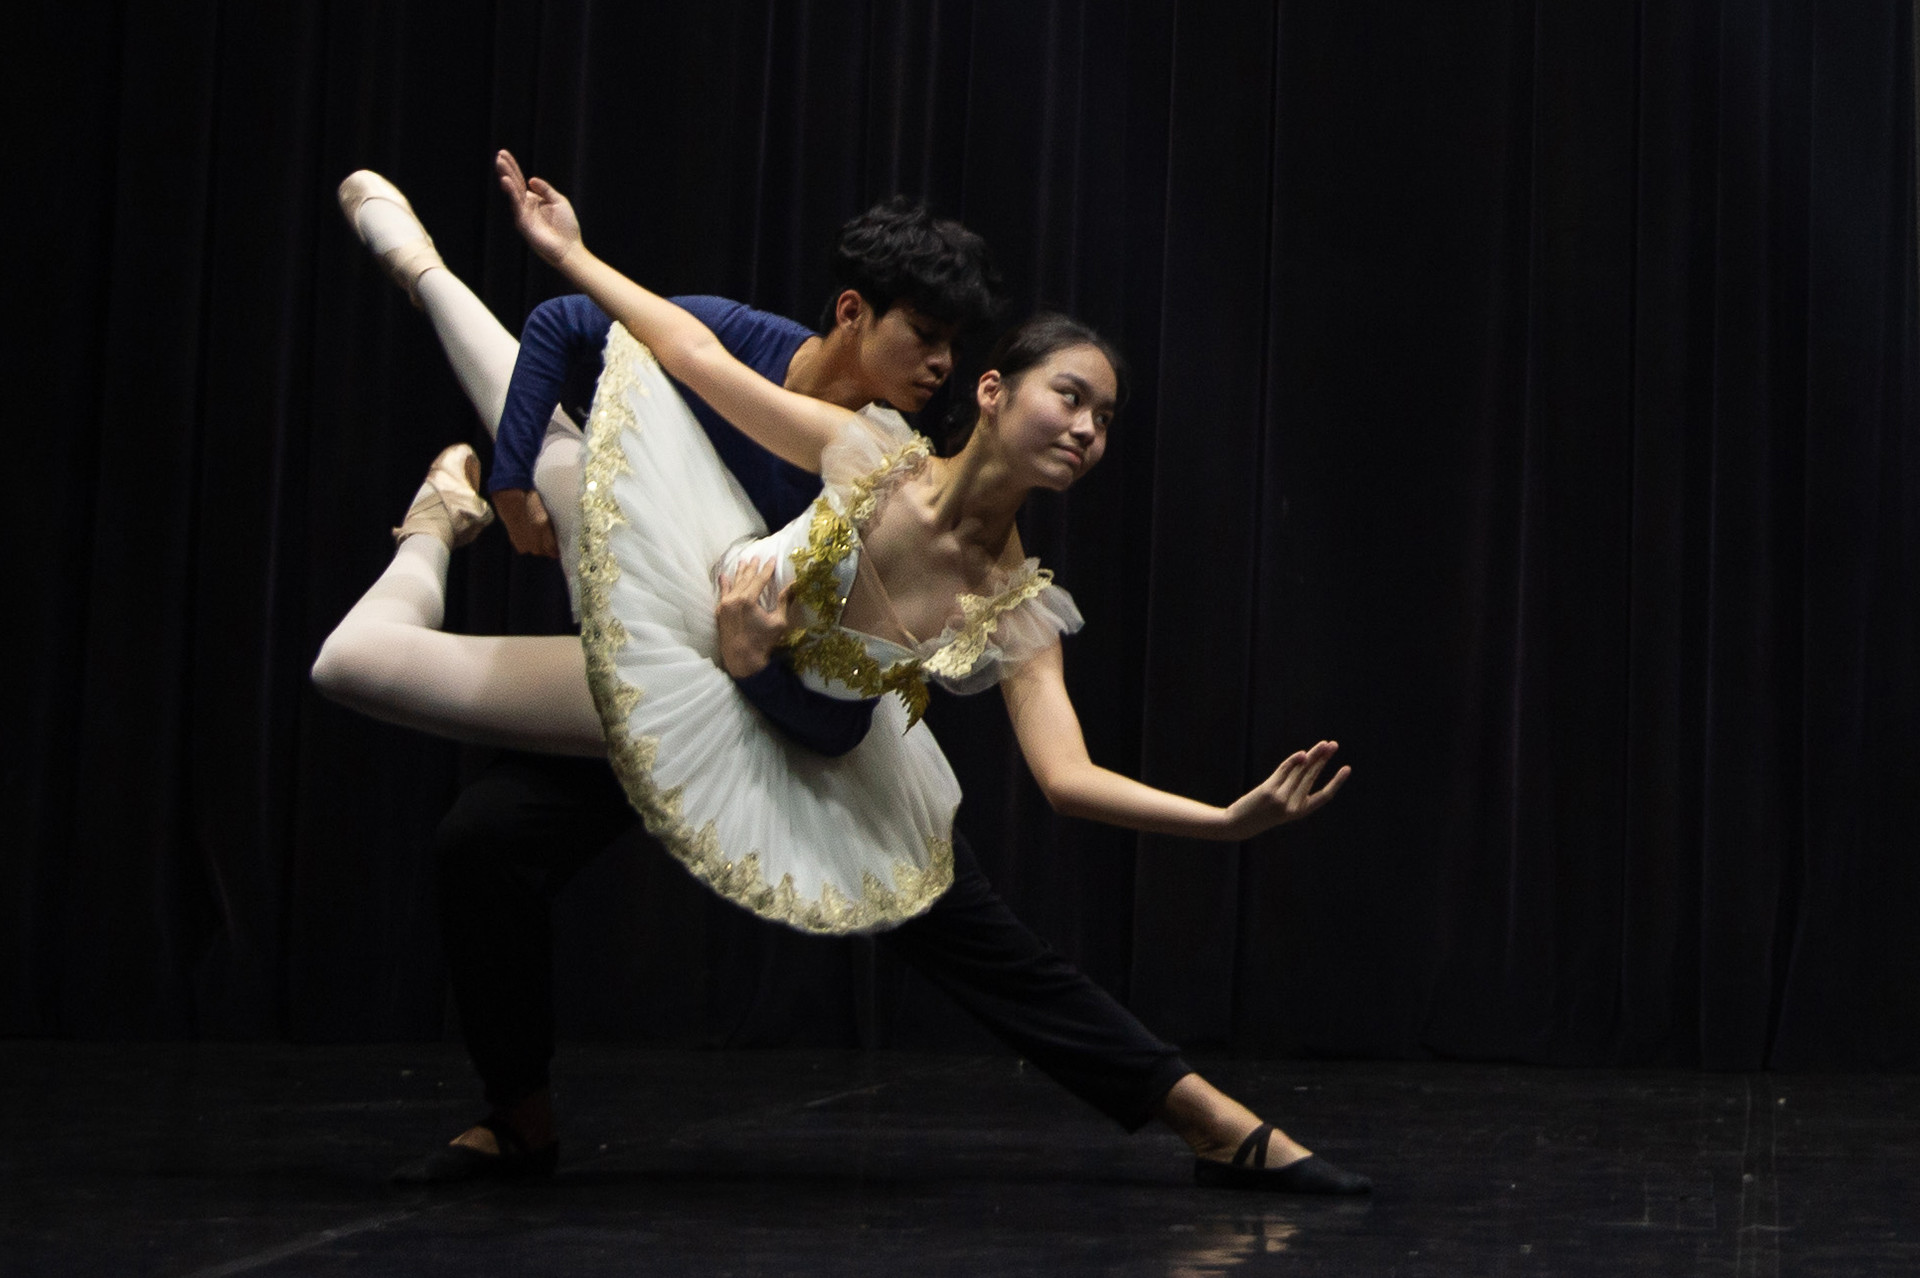 Vũ công ballet: Những đôi chân biến dạng, cong queo, da thịt tím tái...